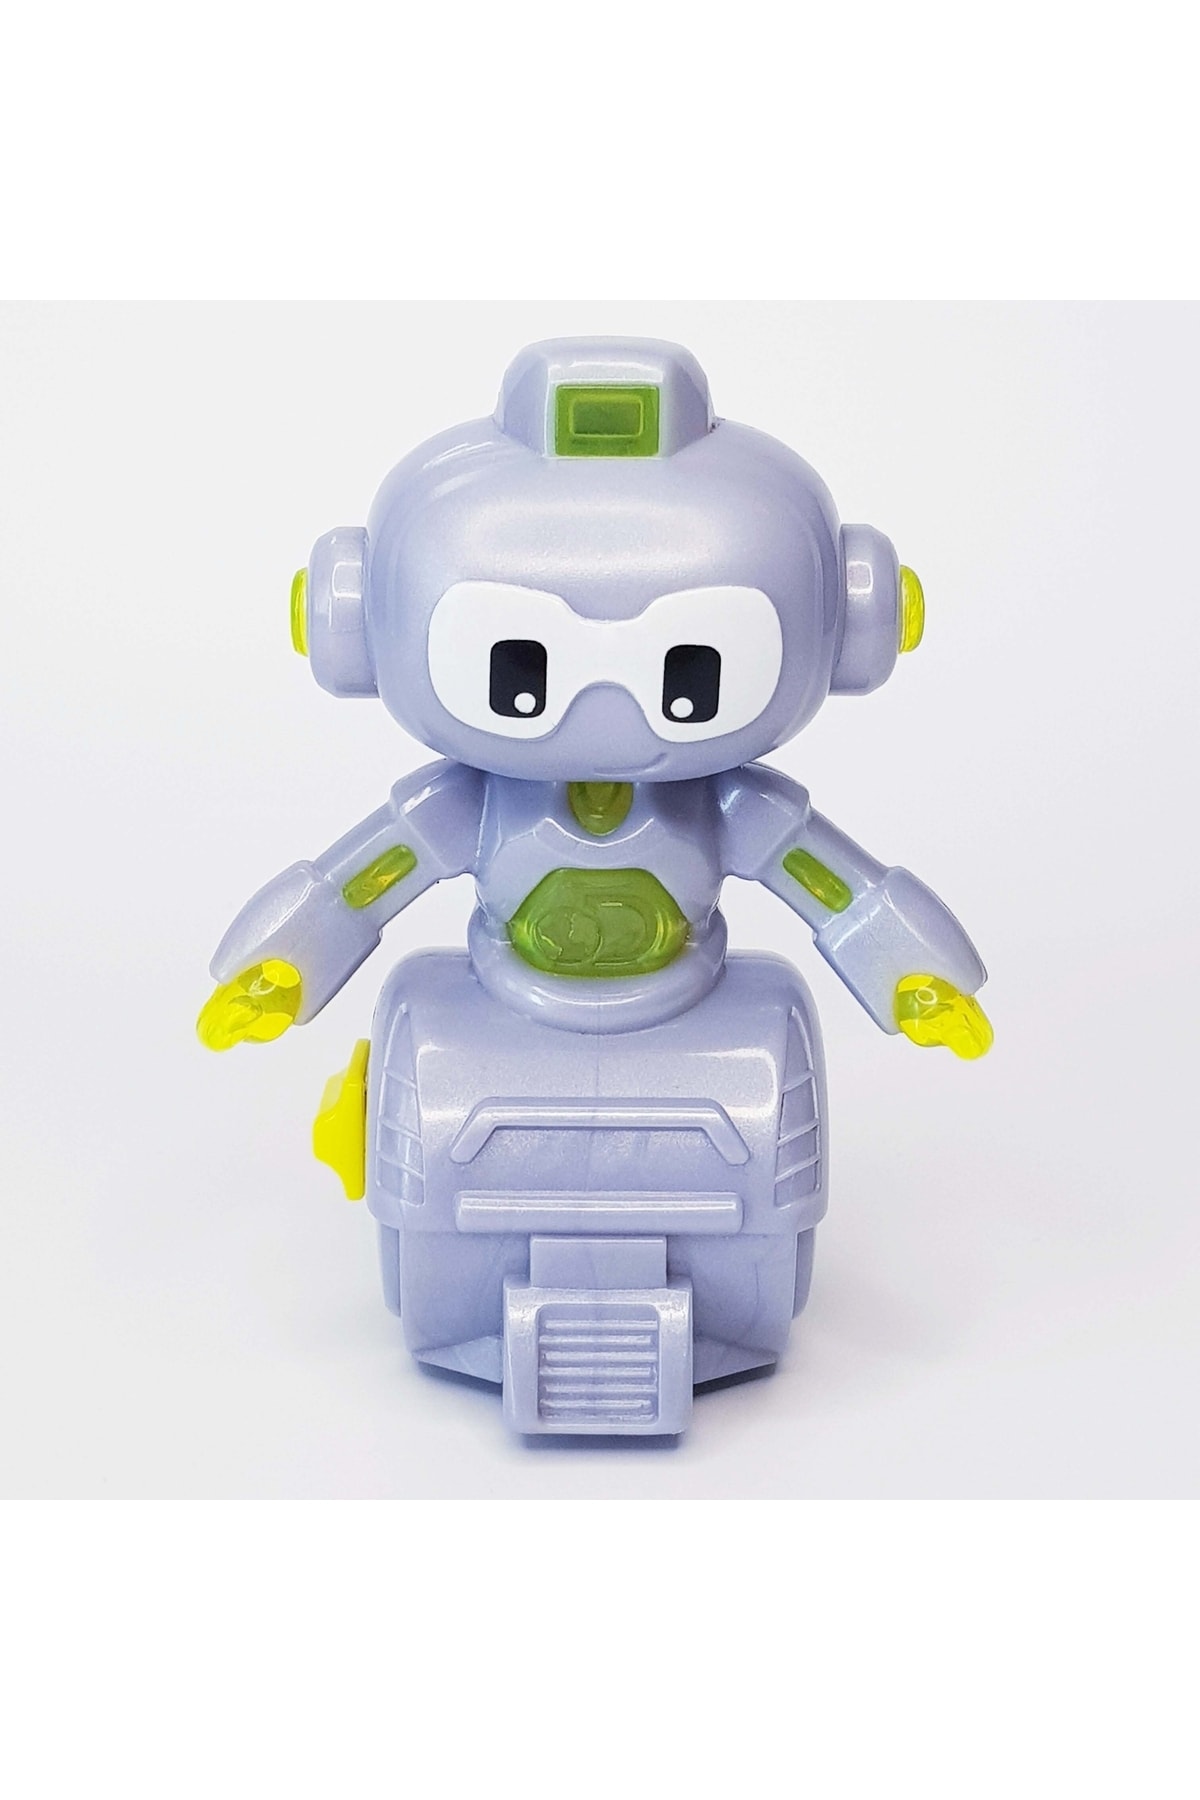 POPKONSOL Robot Figür Oyuncak Lisanslı Koleksiyon Discovery Mindblown Robots C57 Sarı Mcdonalds Lisanslı 2019